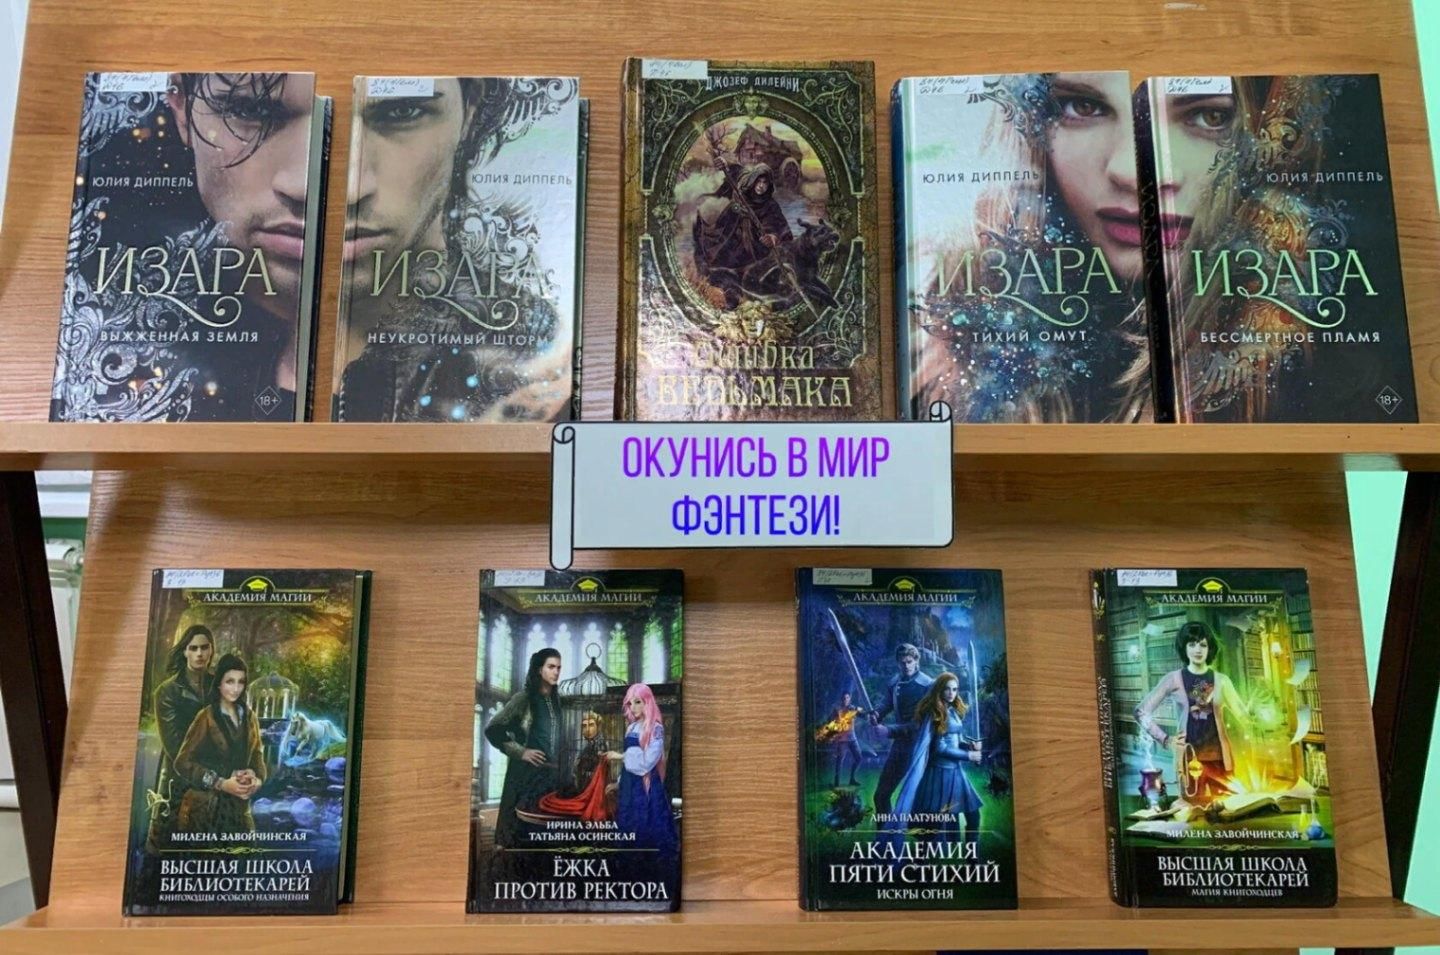 Fantasy world библиотека бесплатная электронная. Книжные выставки в мире фэнтези.